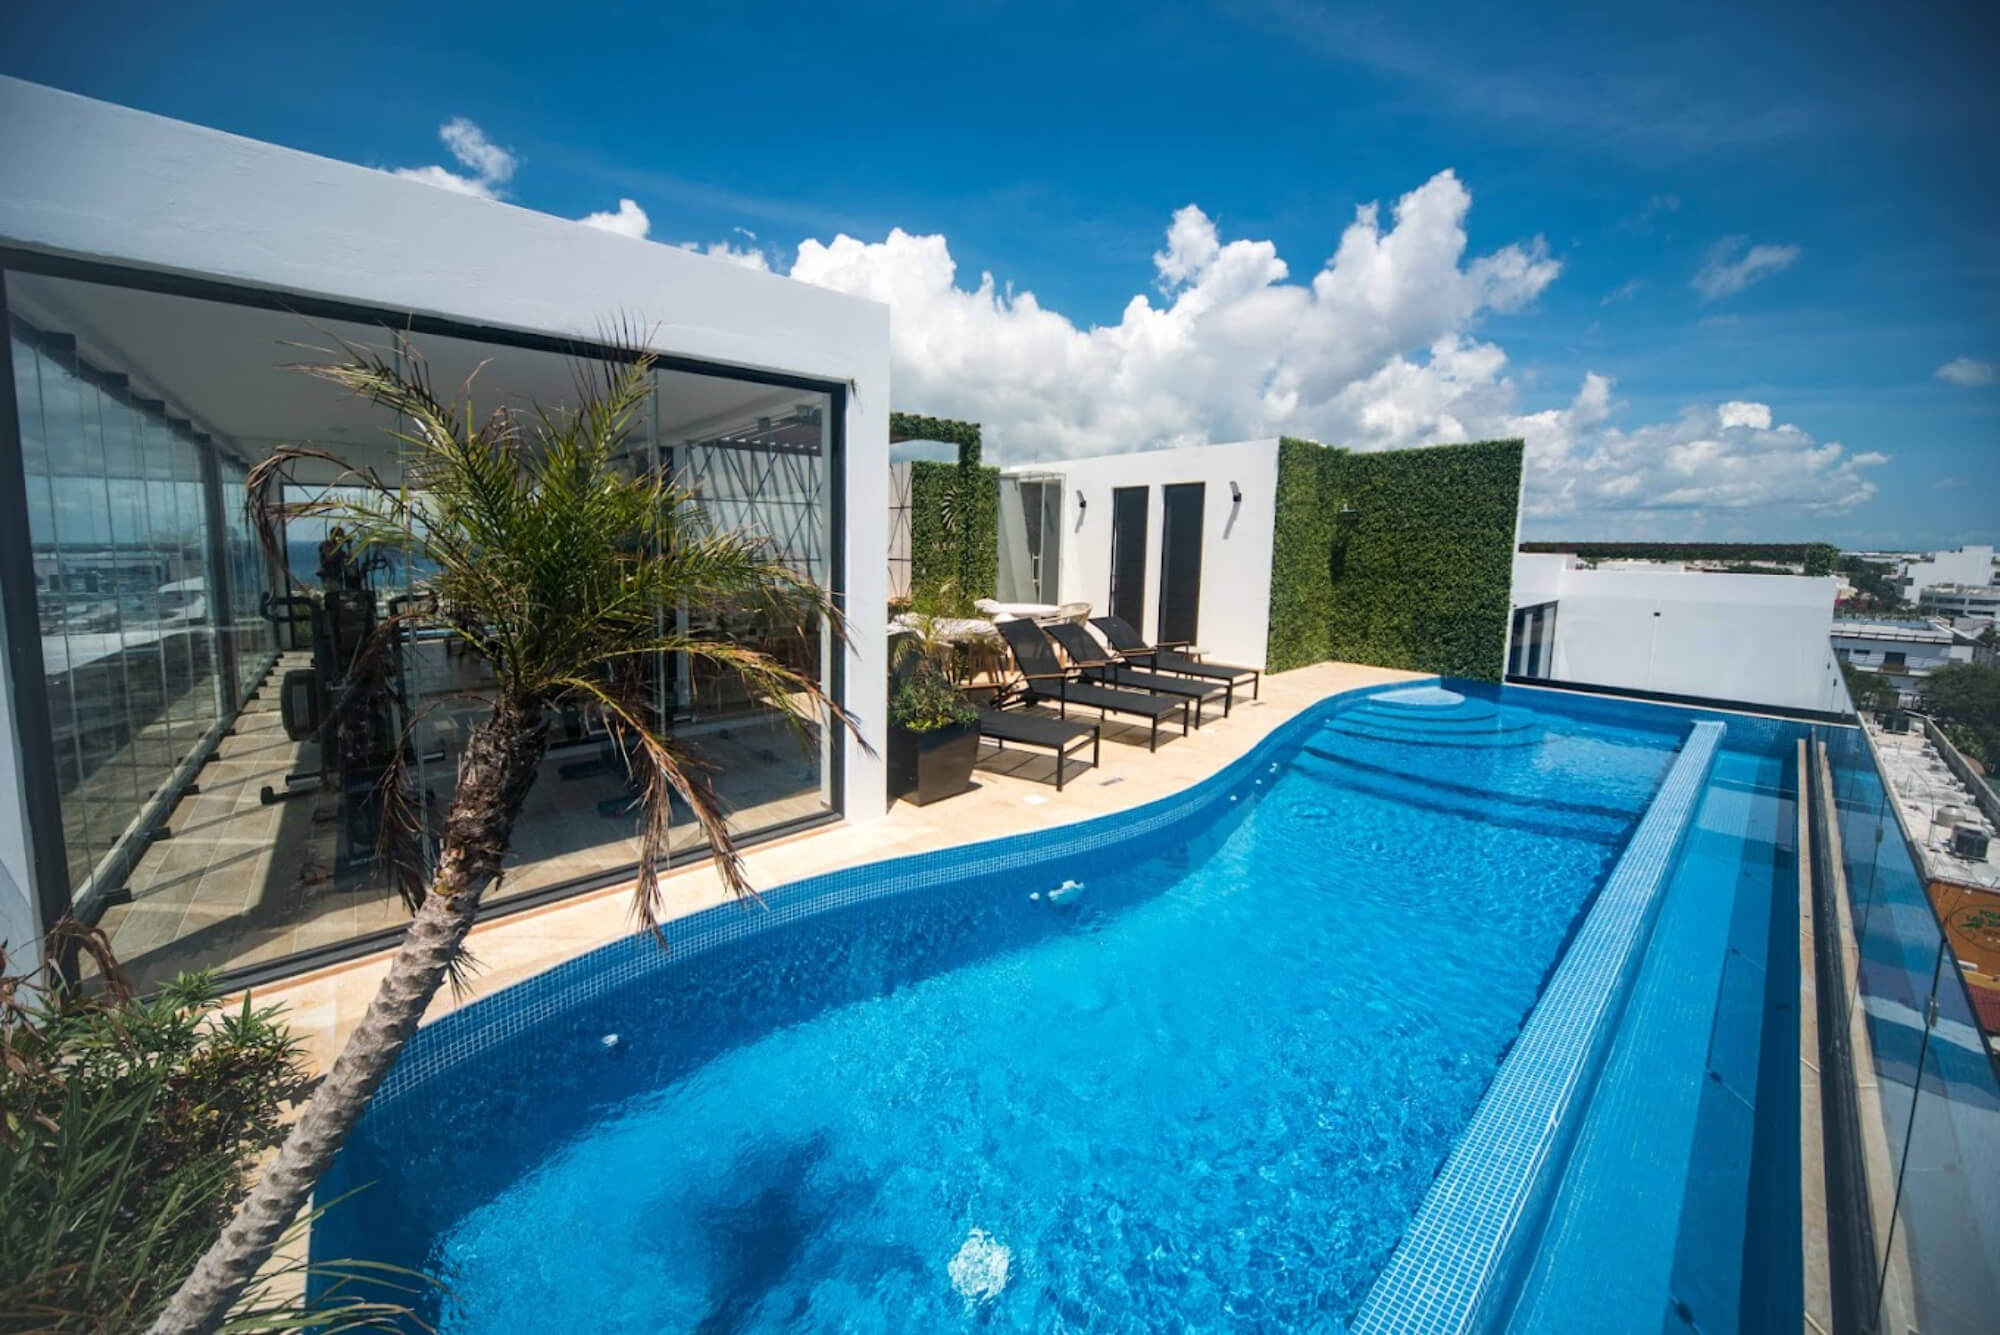 Departamento con terraza, espacios amplios, cuarto de servicio, Playa del Carmen